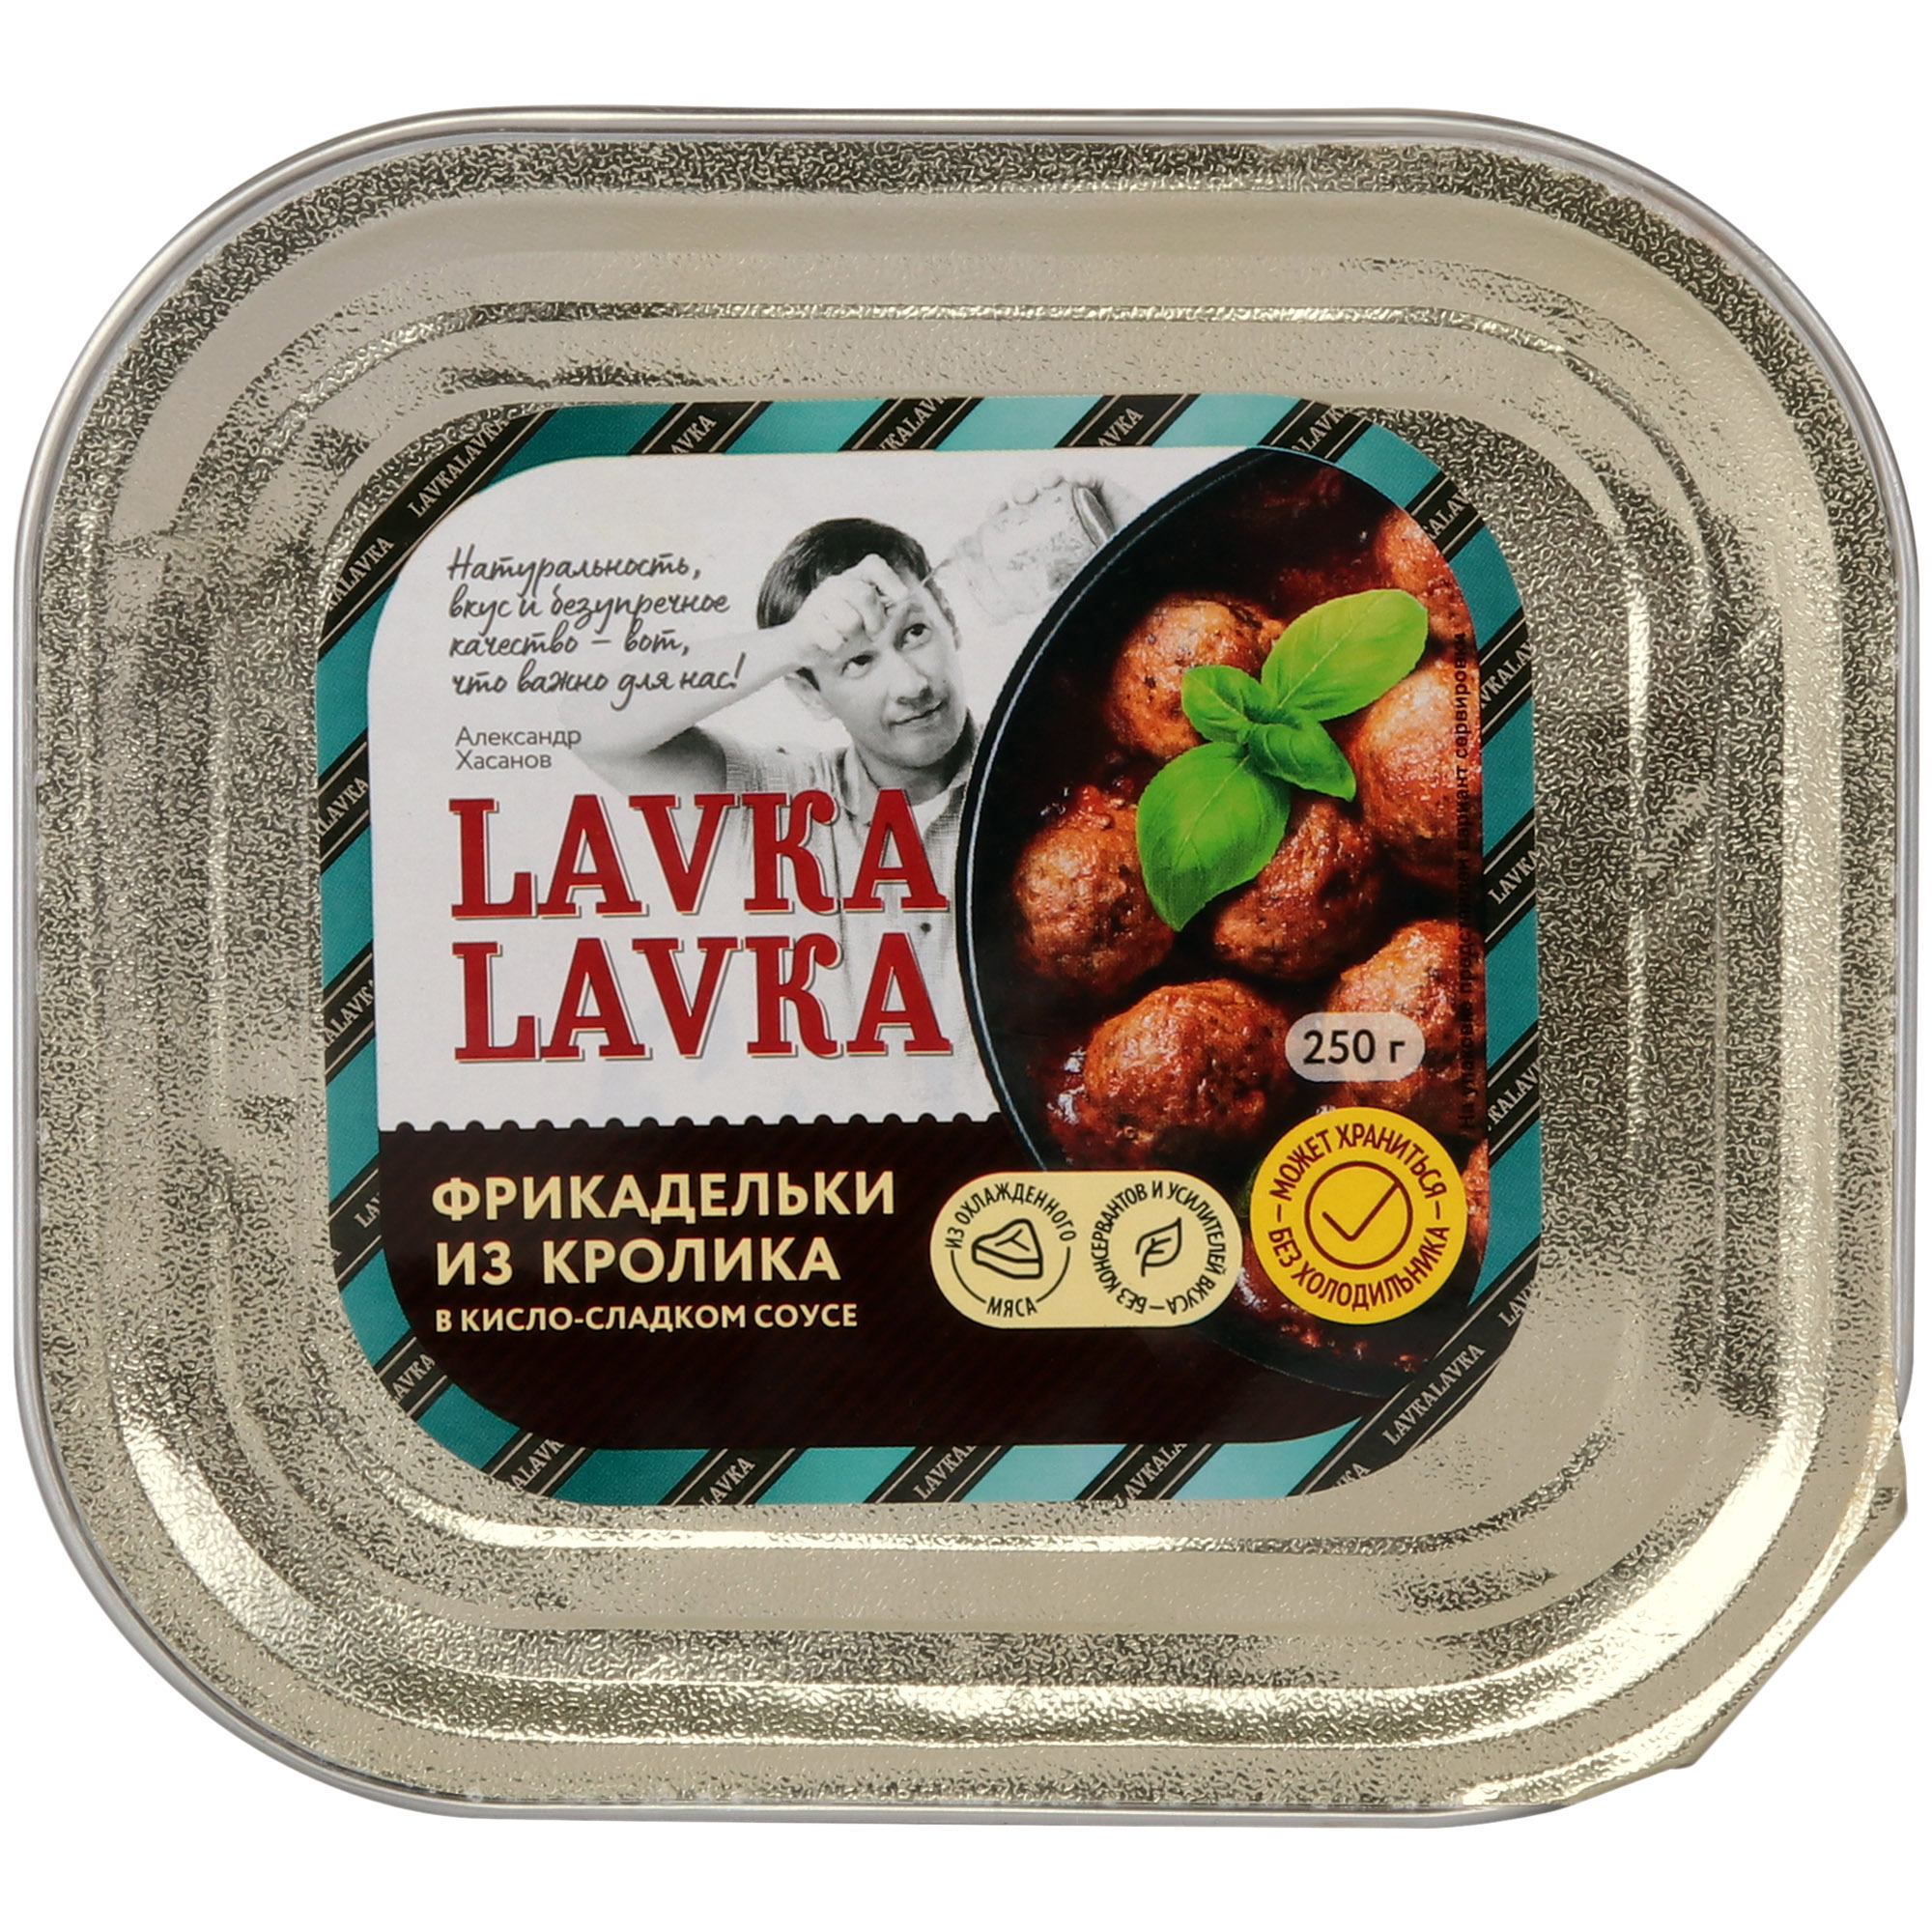 фрикадельки из грудки индейки lavkalavka в сливочном соусе 250 г Фрикадельки LavkaLavka из кролика, 250 г